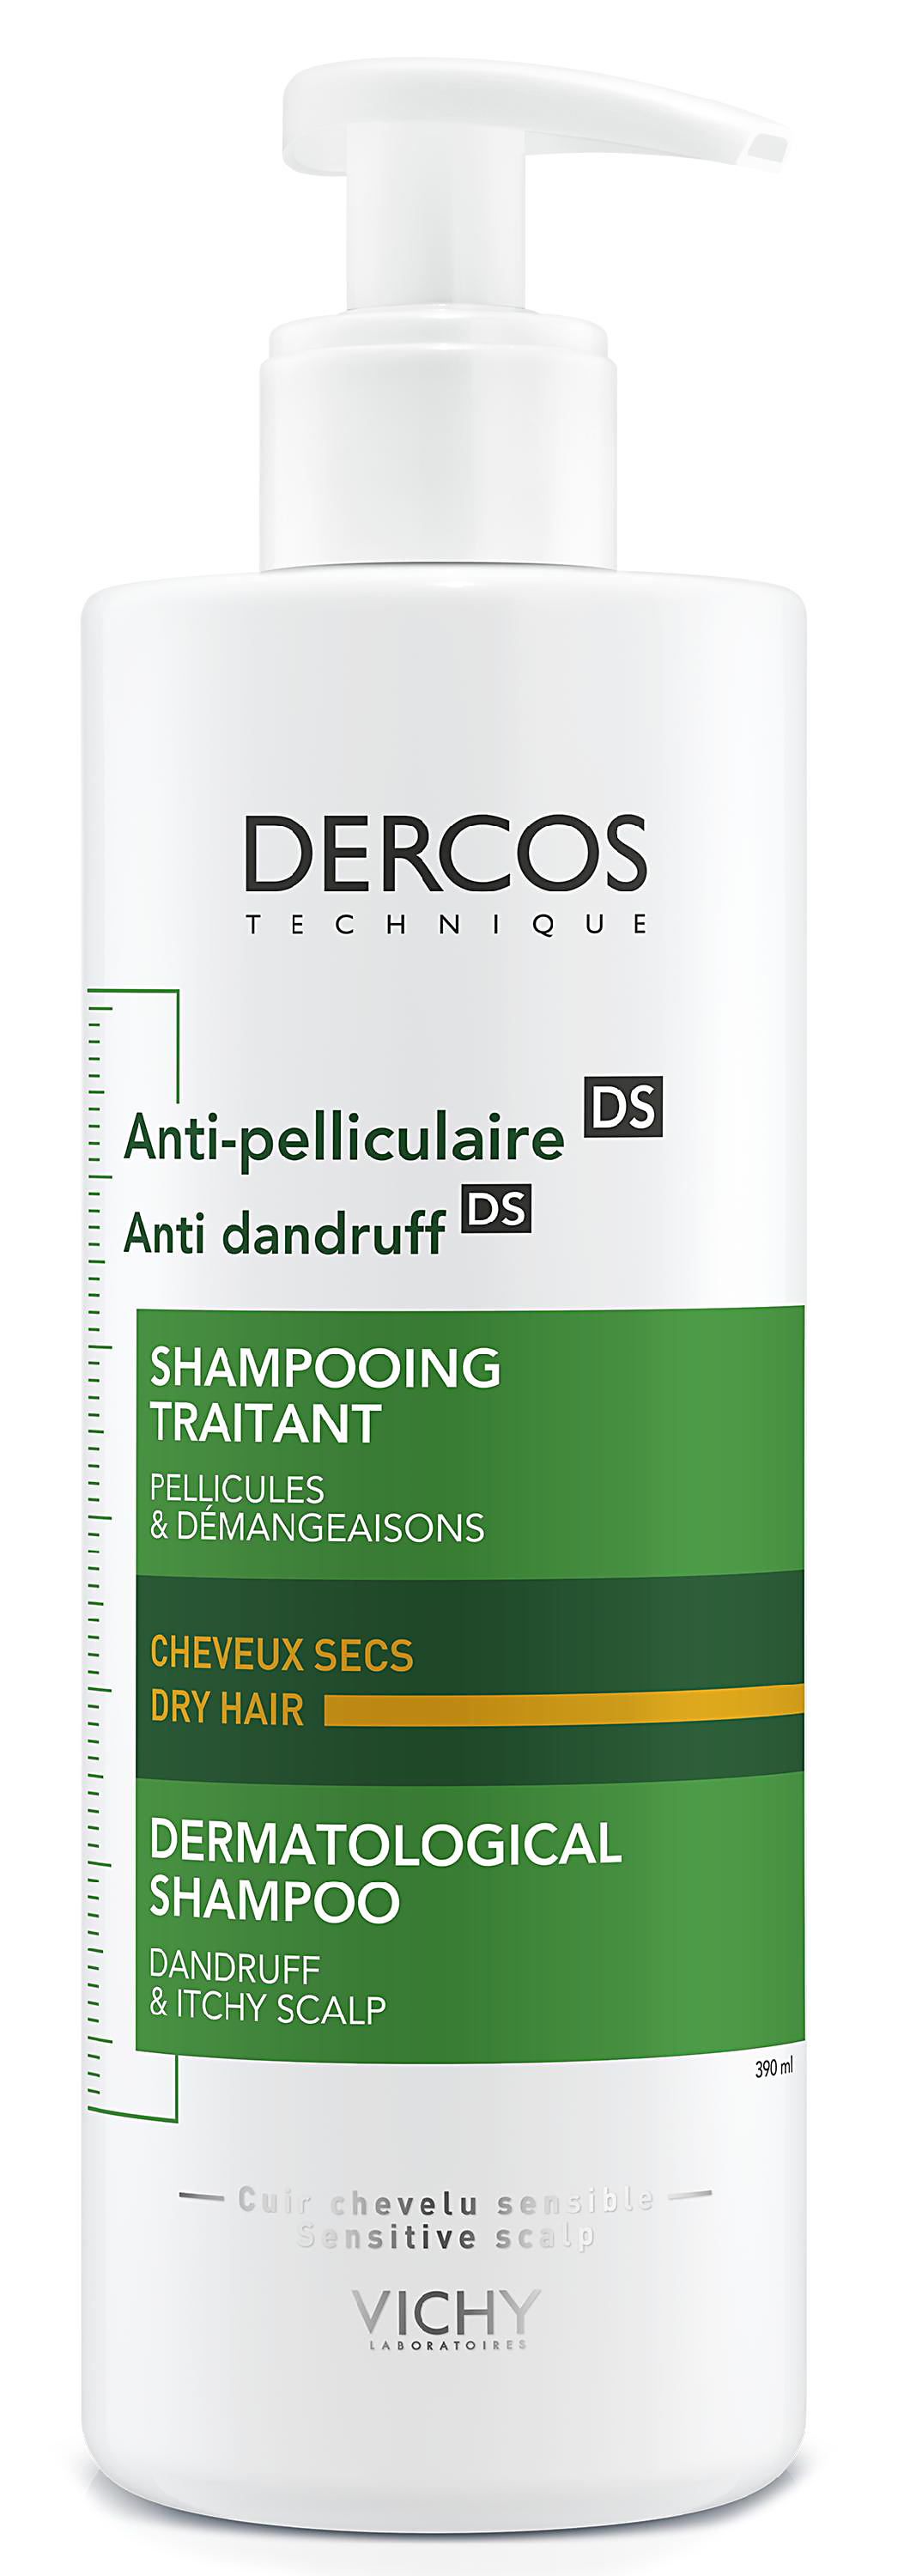 Dercos шампунь-уход против перхоти для сухих волос интенсивный 390мл Vichy (Виши)